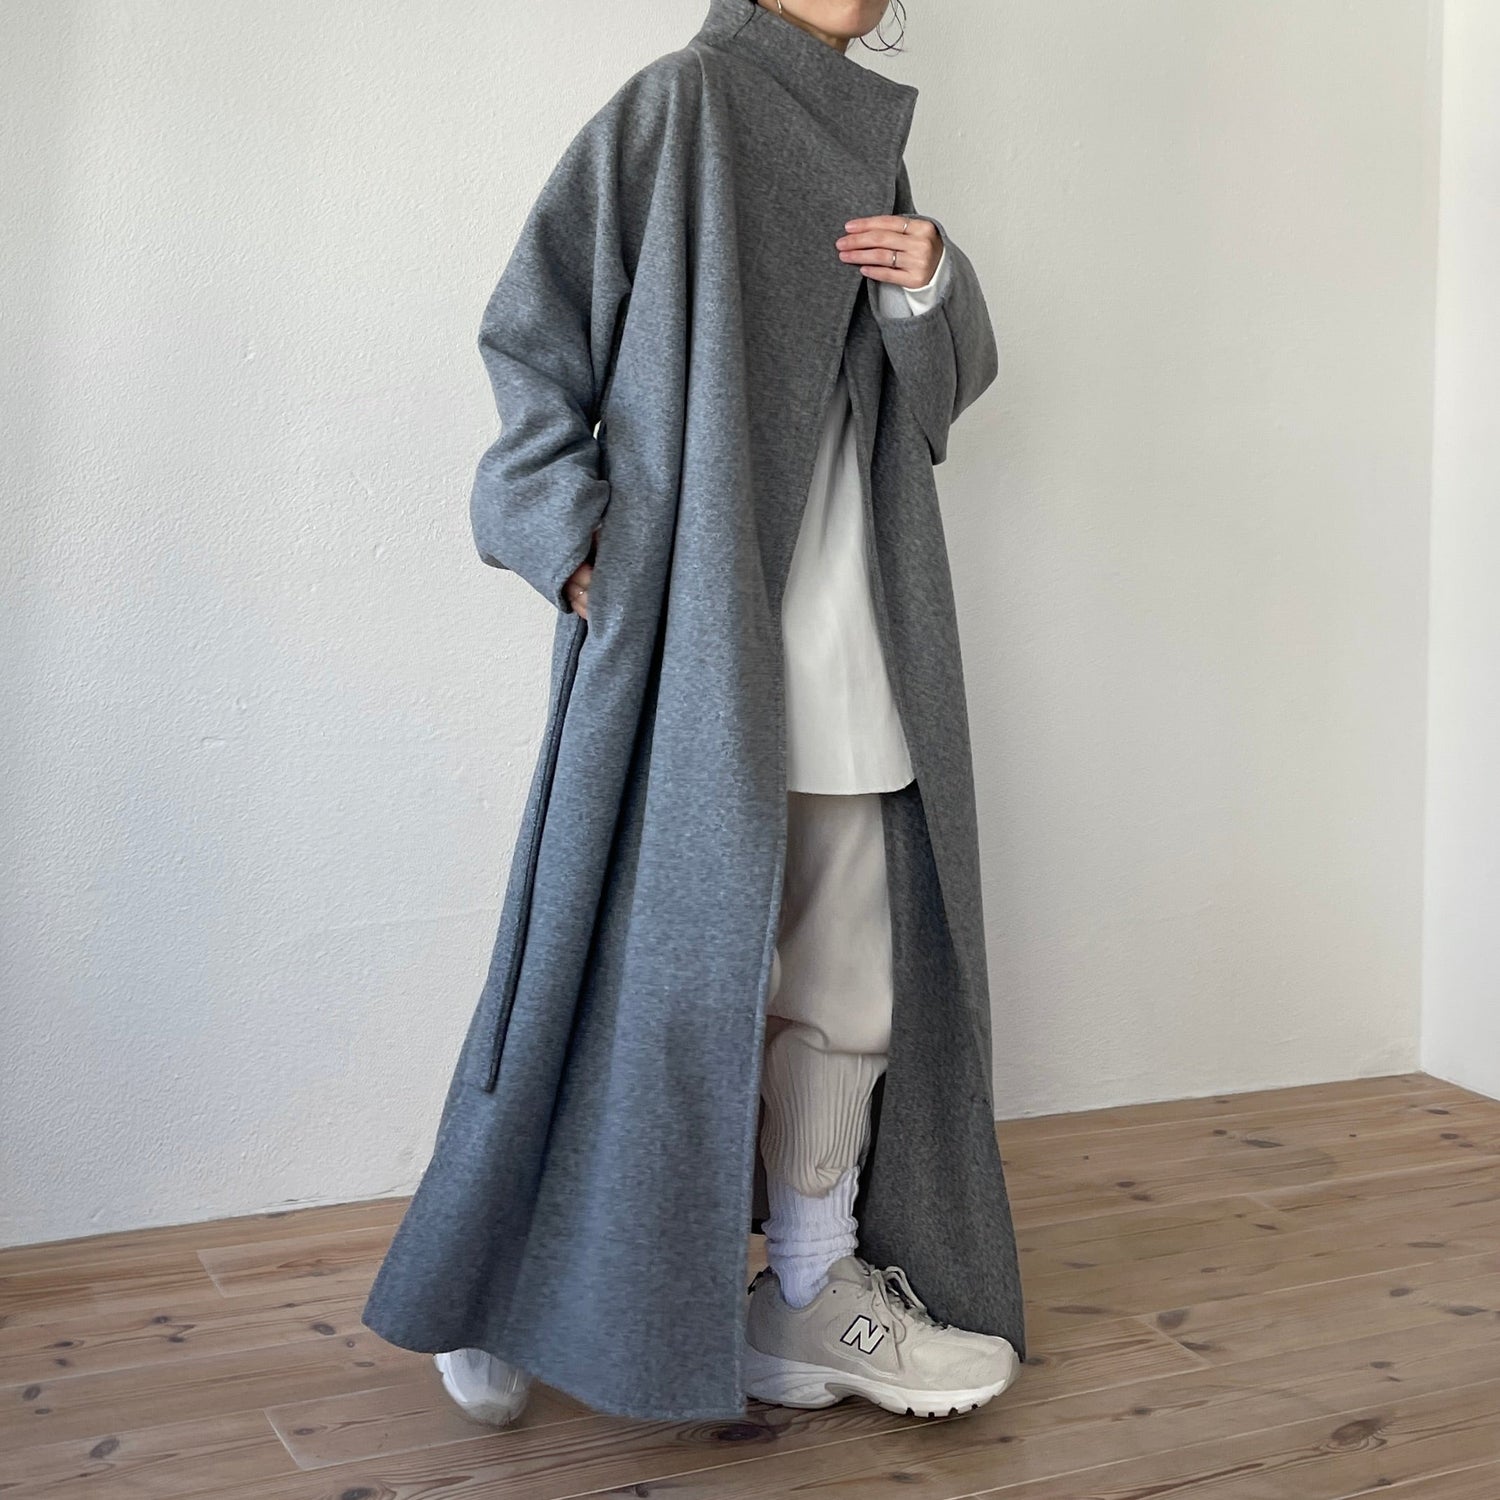 【SAMPLE】daily daily buddy coat / gray